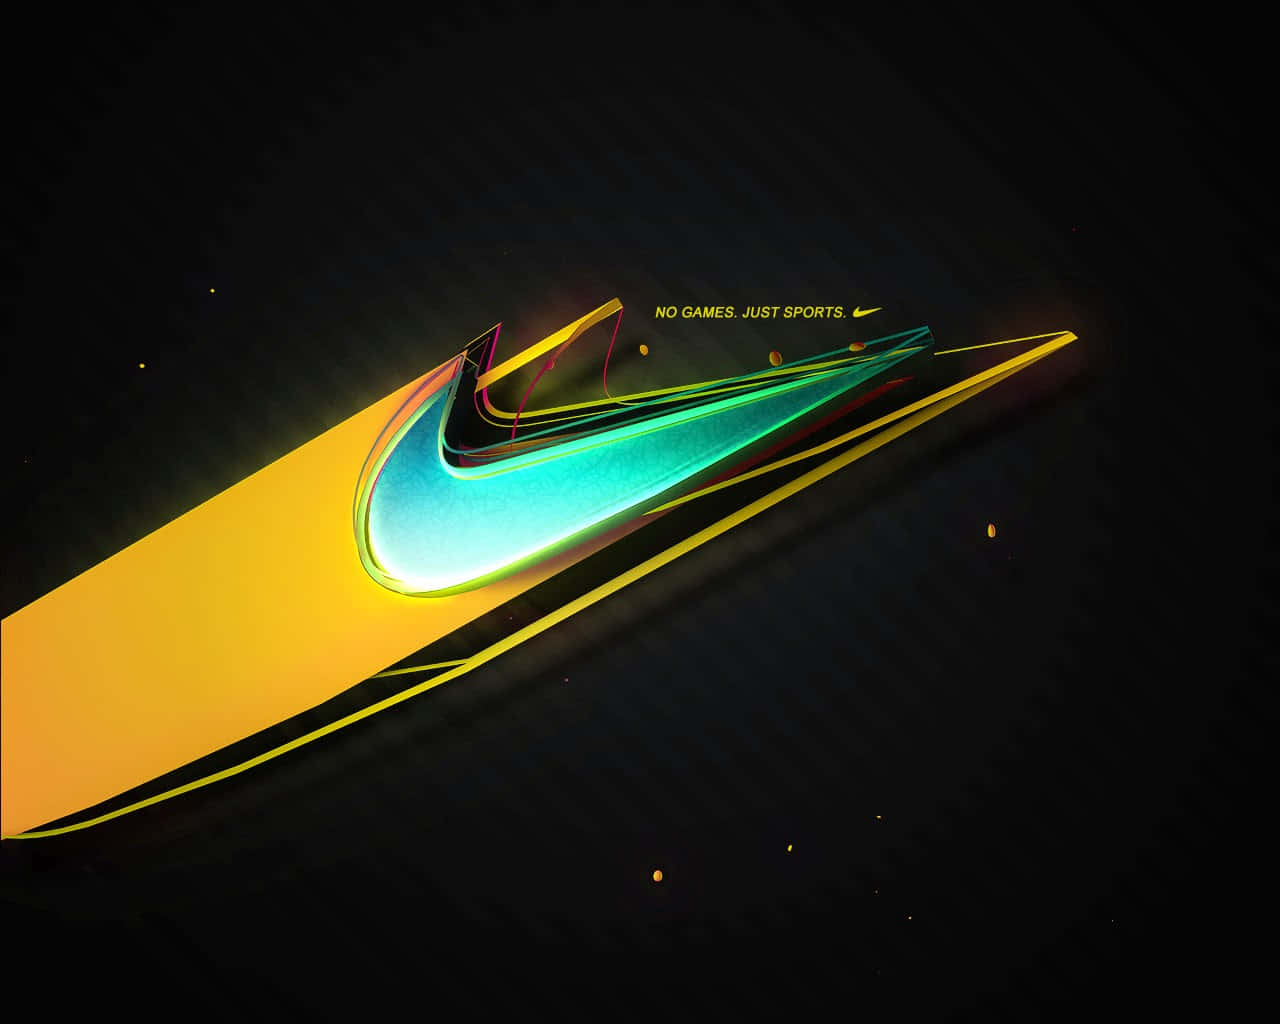 Vaioltre I Limiti Con Nike.